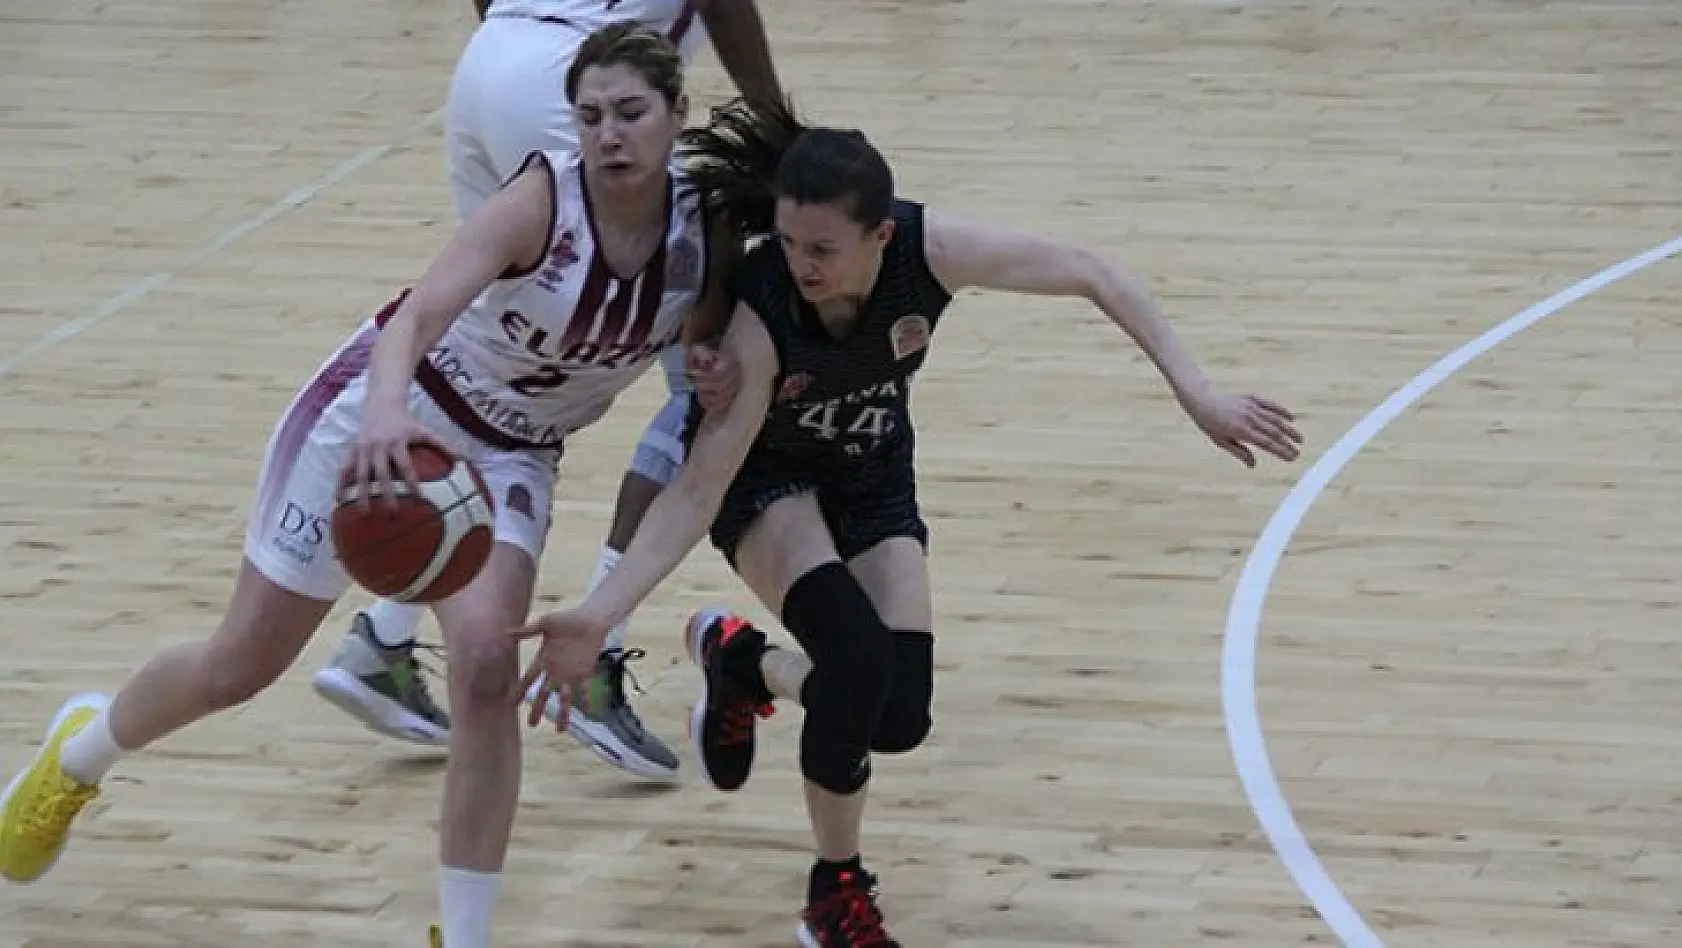 Elazığ İl Özel İdare: 60 – Antalya 07 Basketbol: 67